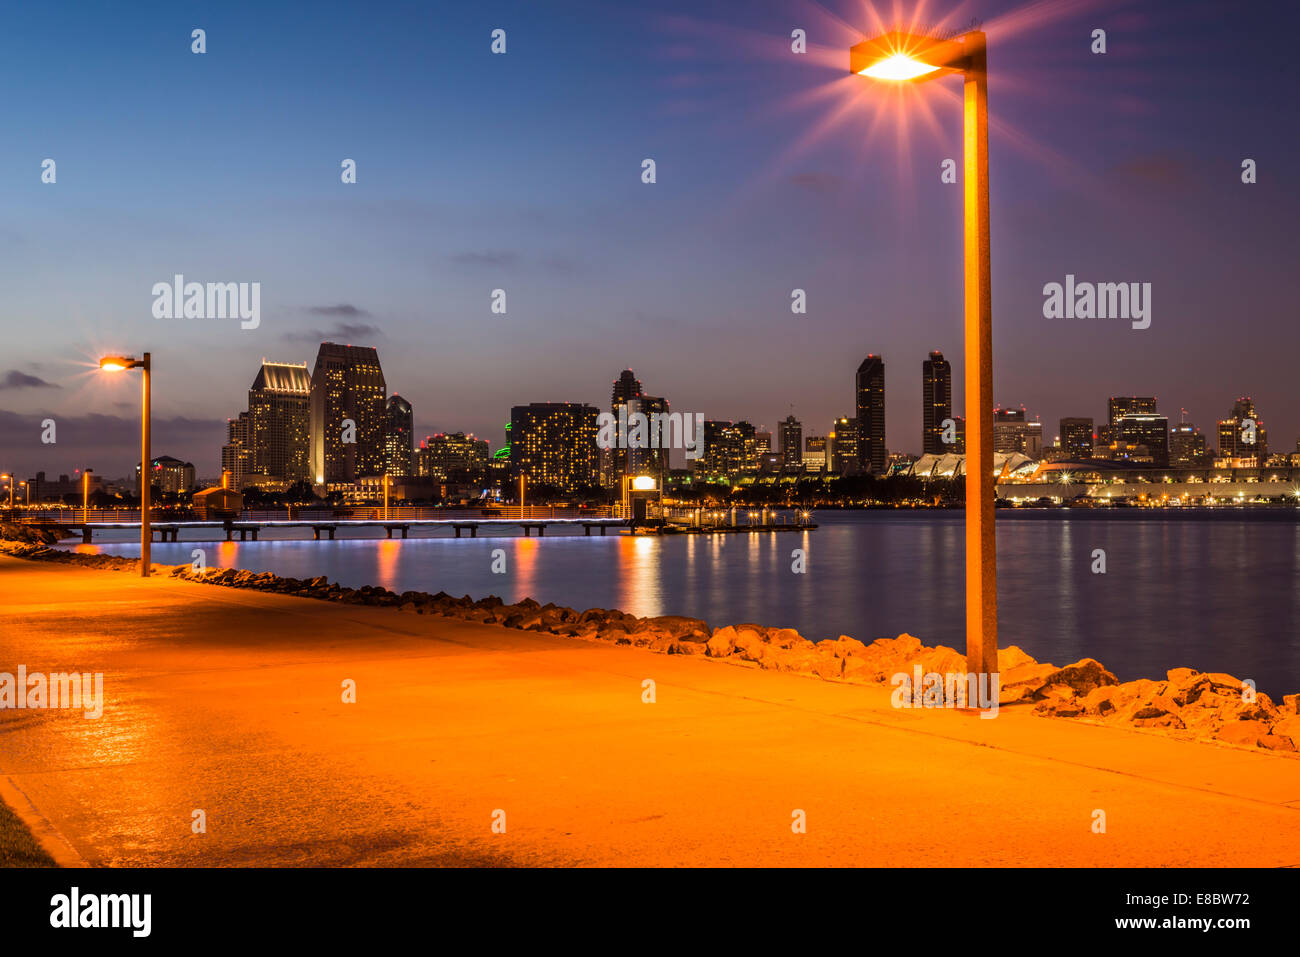 Blick auf den Hafen von San Diego und die Skyline der Innenstadt bei Nacht. Fotografiert in der Stadt Coronado, Kalifornien, USA. Stockfoto